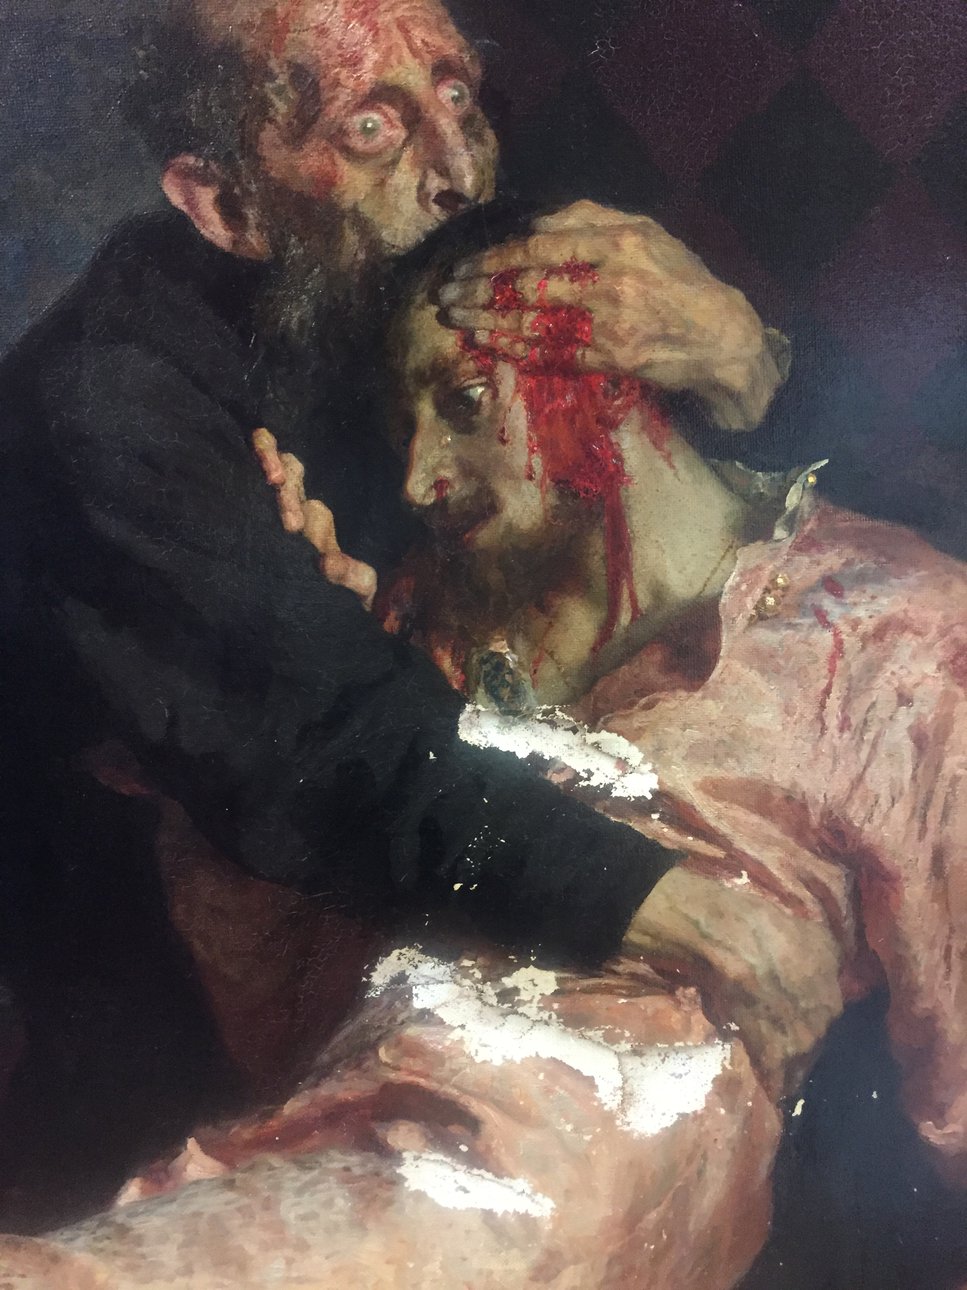 Картина Ильи Репина «Иван Грозный и сын его Иван 16 ноября 1581 года» после нападения посетителя 25 мая. Фото: Государственная Третьяковская галерея